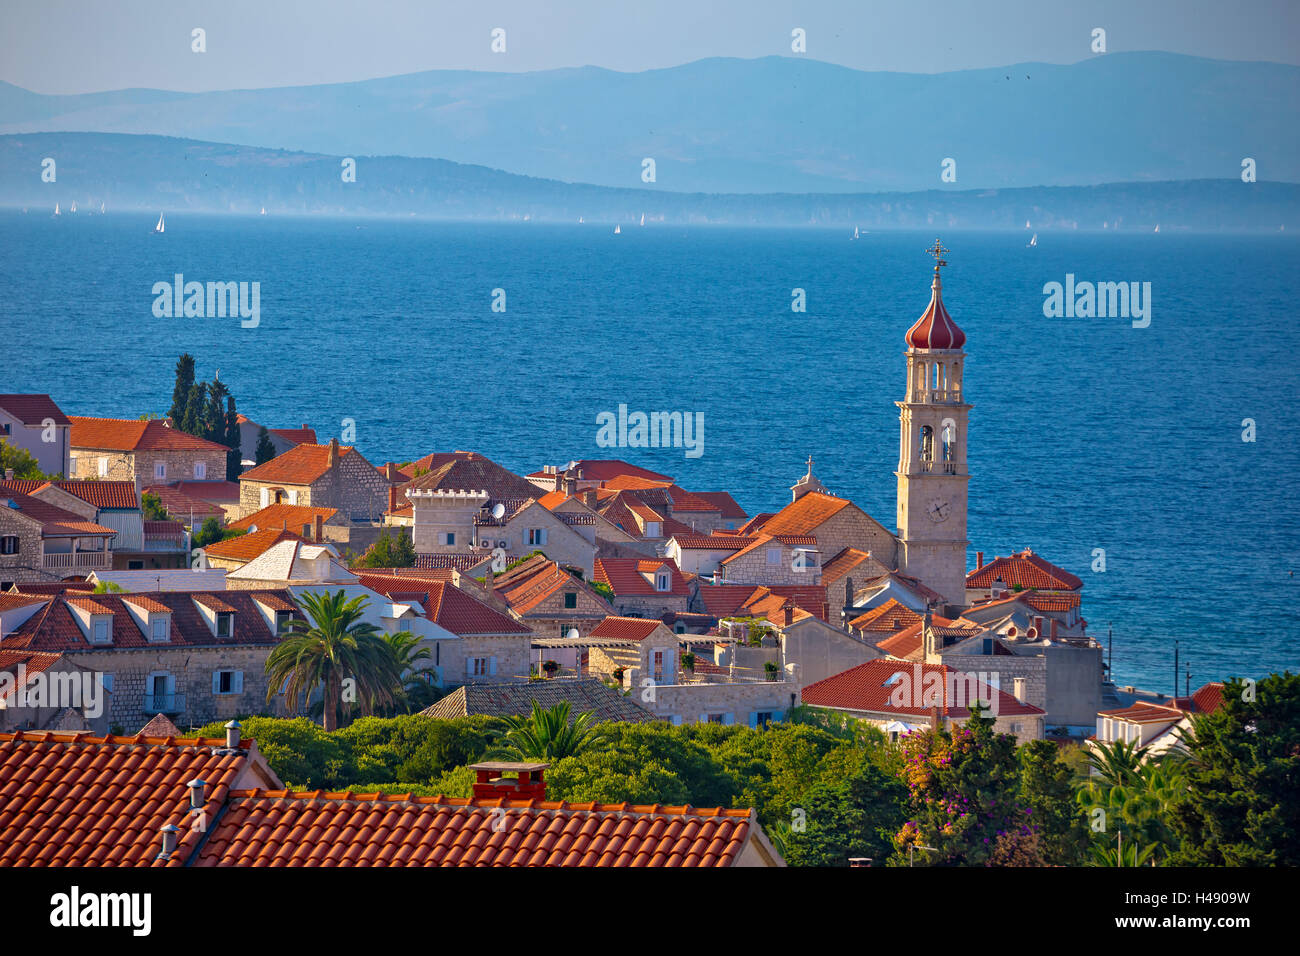 Ville de Sutivan, vue sur l'horizon, l'île de Brac, Croatie Banque D'Images